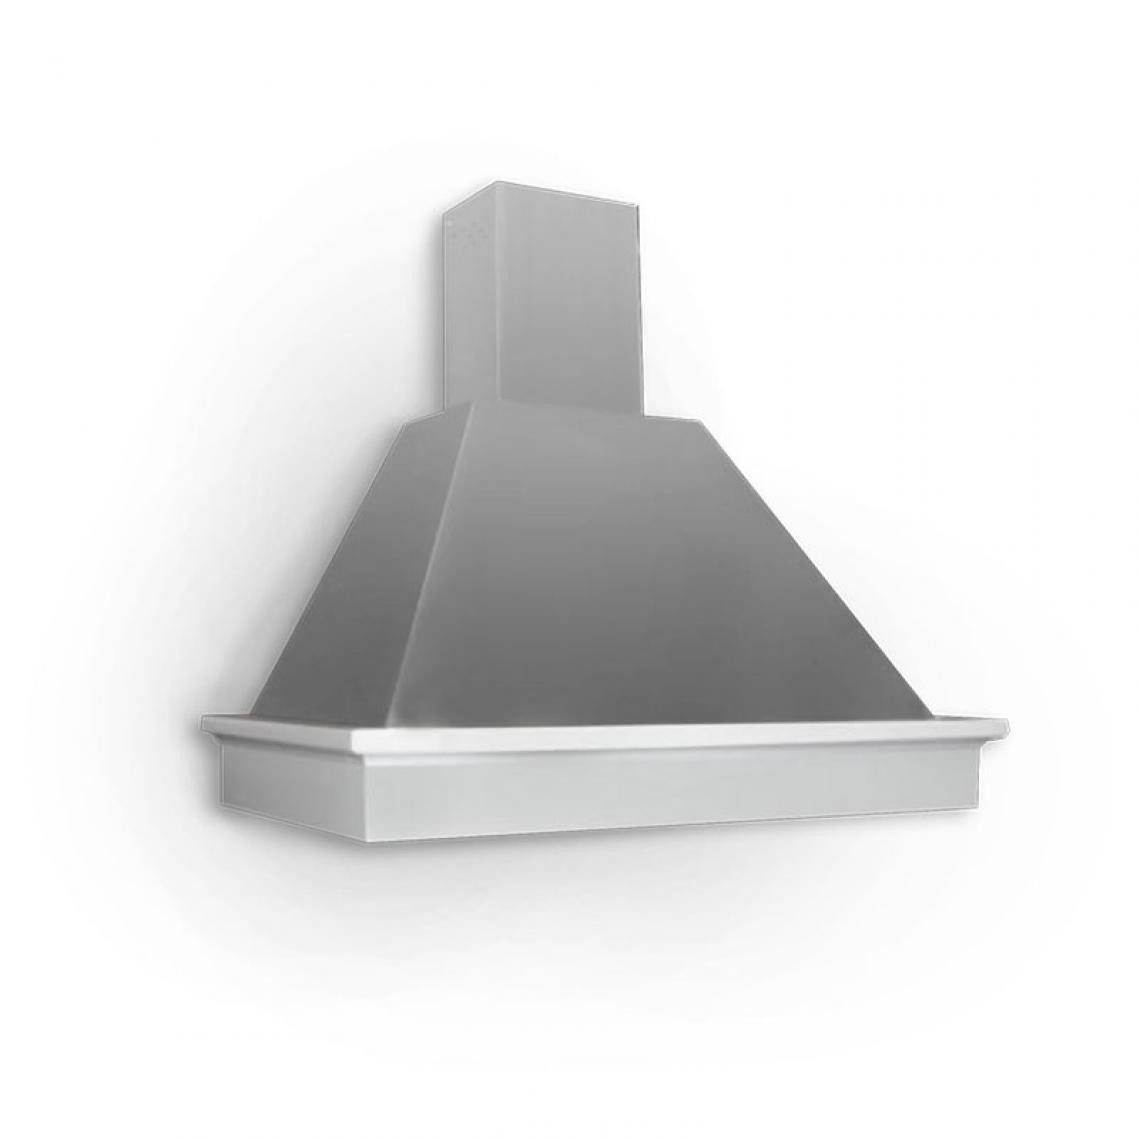 Webmarketpoint - Hotte de cuisine en aluminium avec cheminée télescopique de 90 cm - Hotte